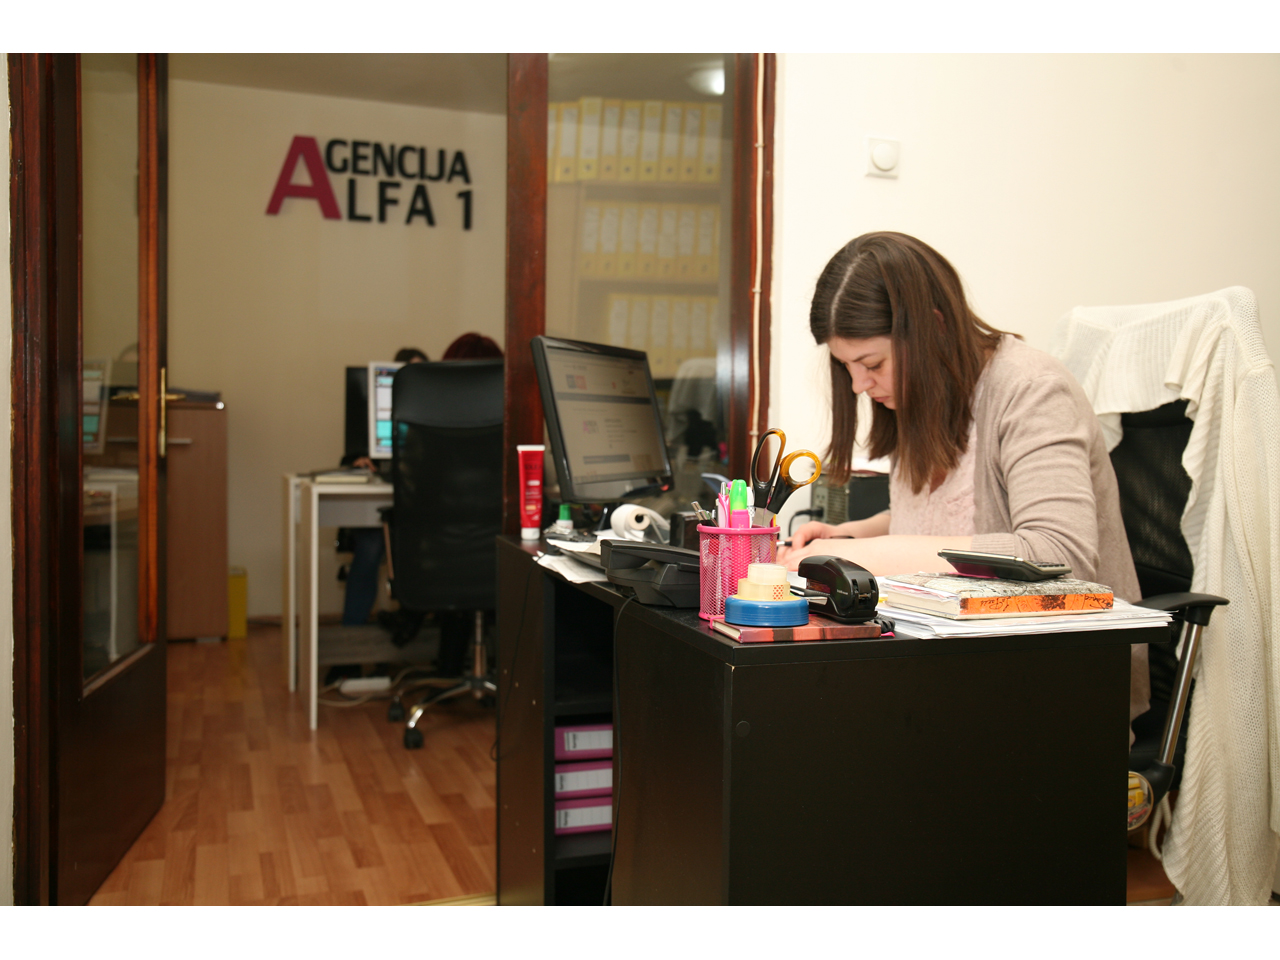 ALFA 1 AGENCY Book-keeping agencies Belgrade - Photo 5